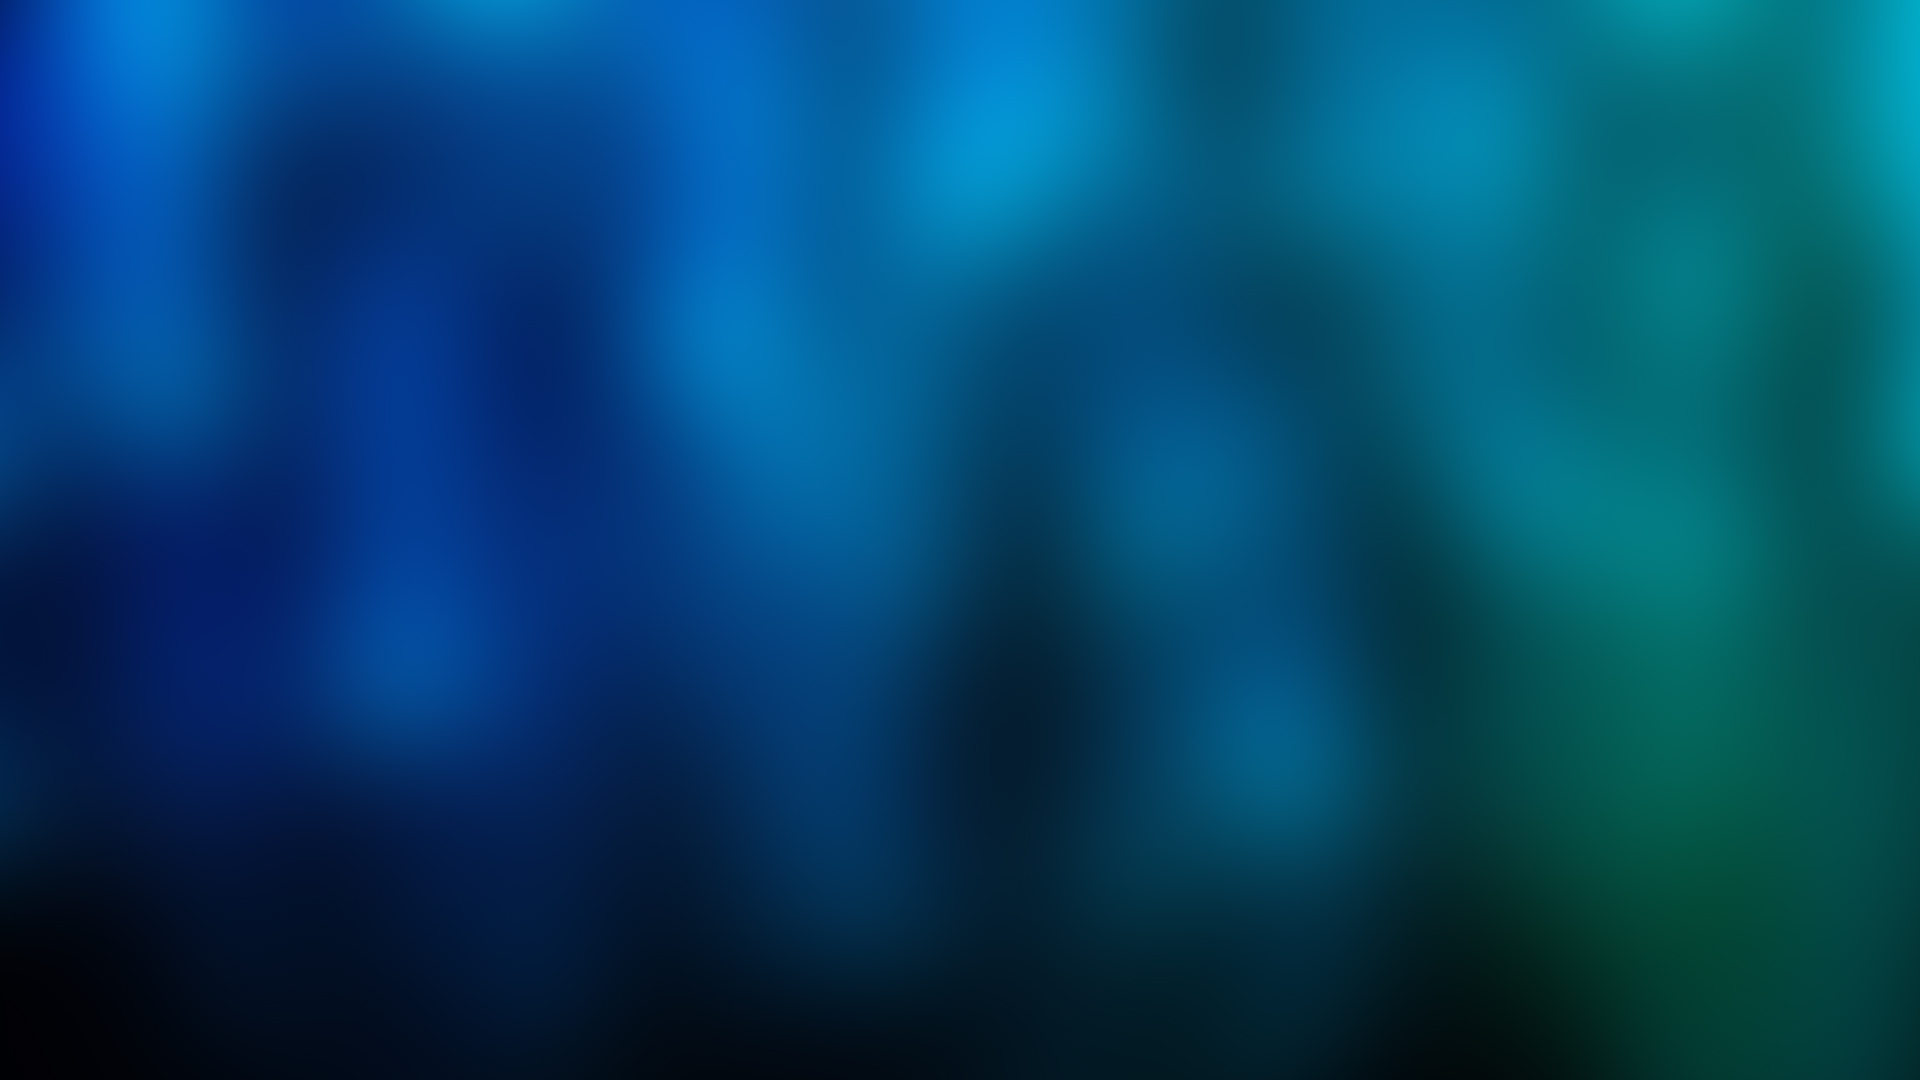 Blurred Backgrounds MeLoveWebDesign